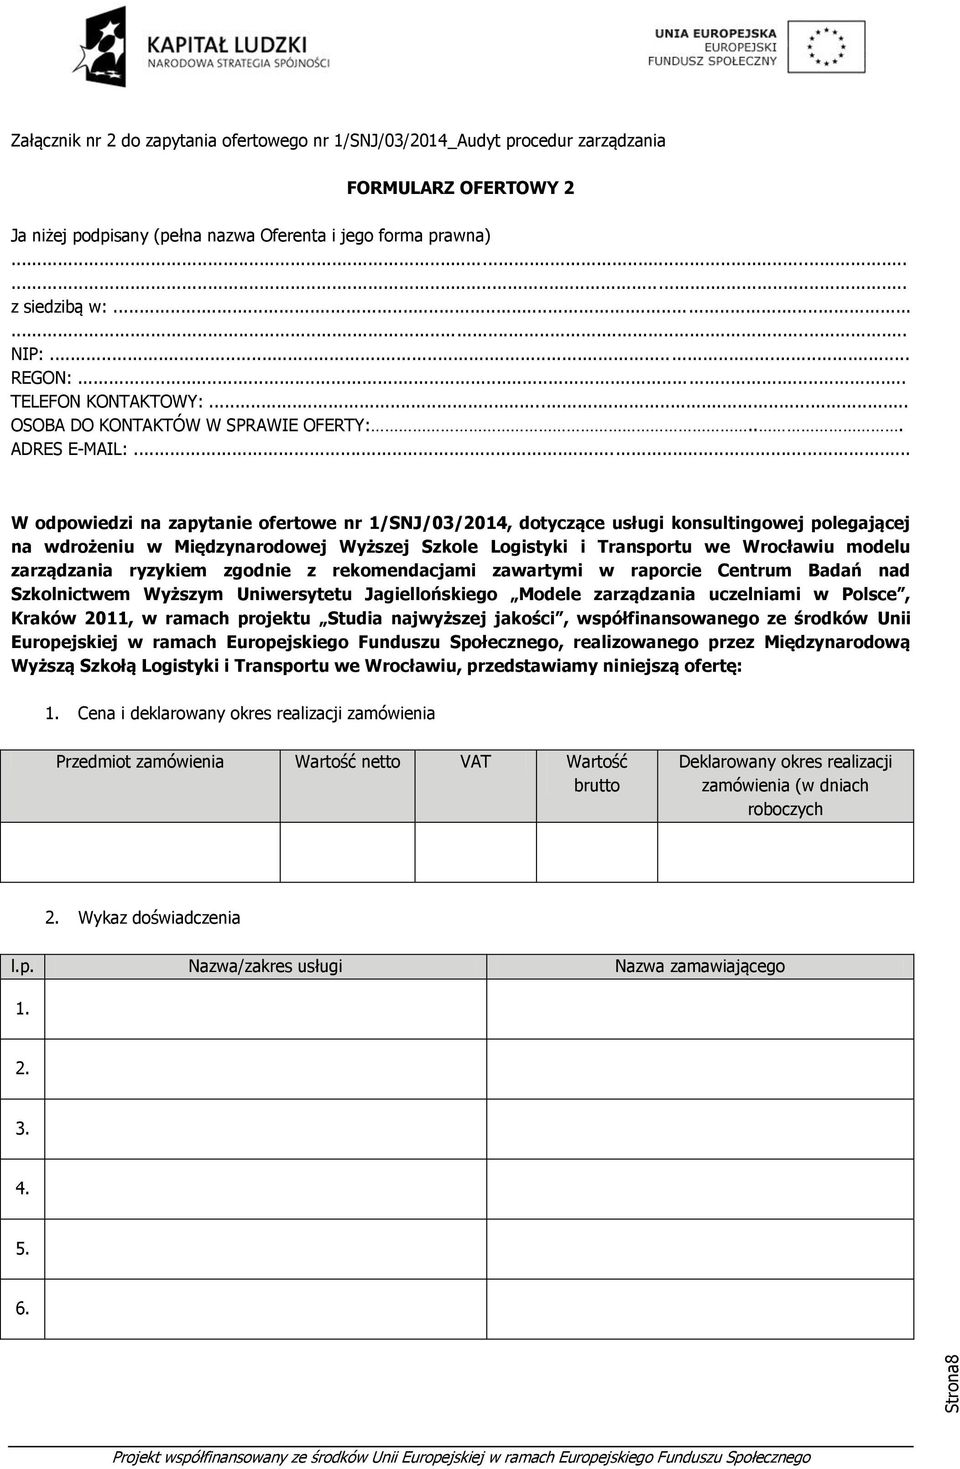 .. W odpowiedzi na zapytanie ofertowe nr 1/SNJ/03/2014, dotyczące usługi konsultingowej polegającej na wdrożeniu w Międzynarodowej Wyższej Szkole Logistyki i Transportu we Wrocławiu modelu